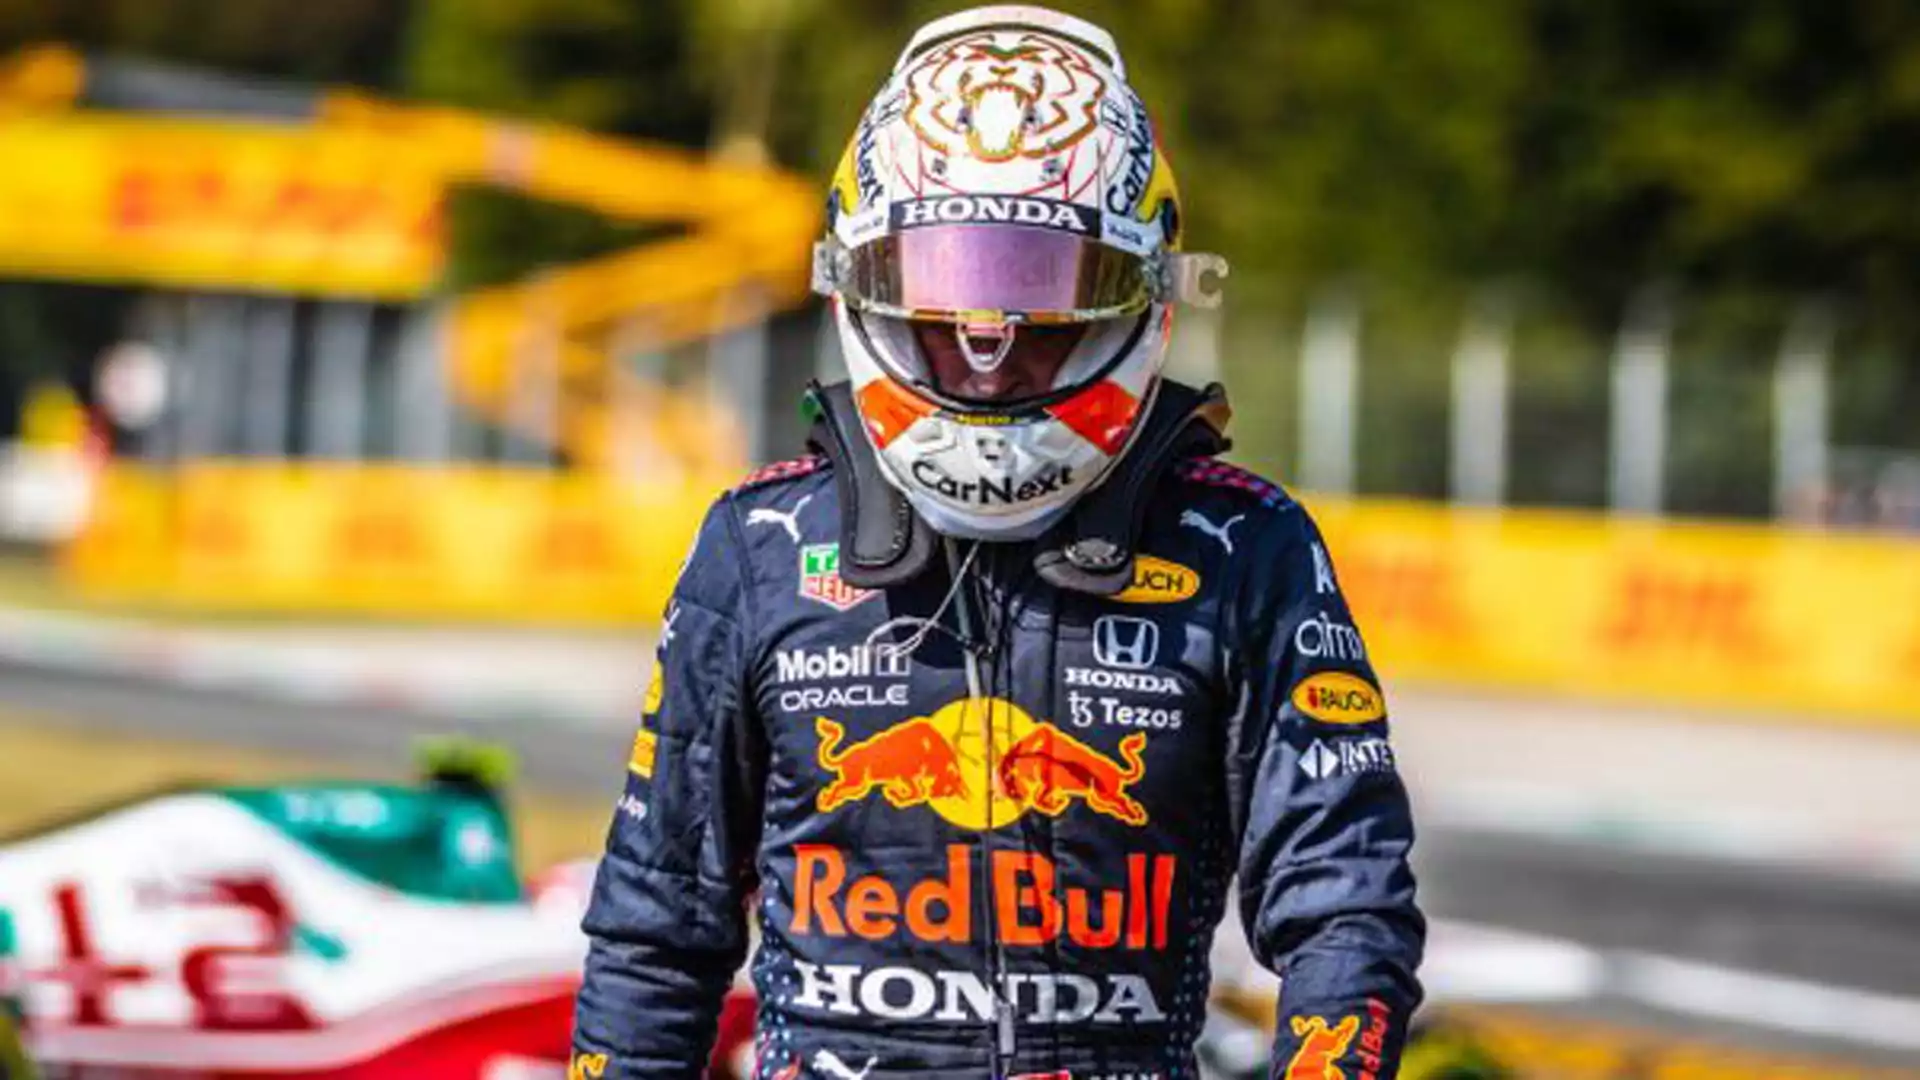 9 - In F1 si va per cicli: probabilmente la Red Bull sarà la migliore anche nei prossimi anni